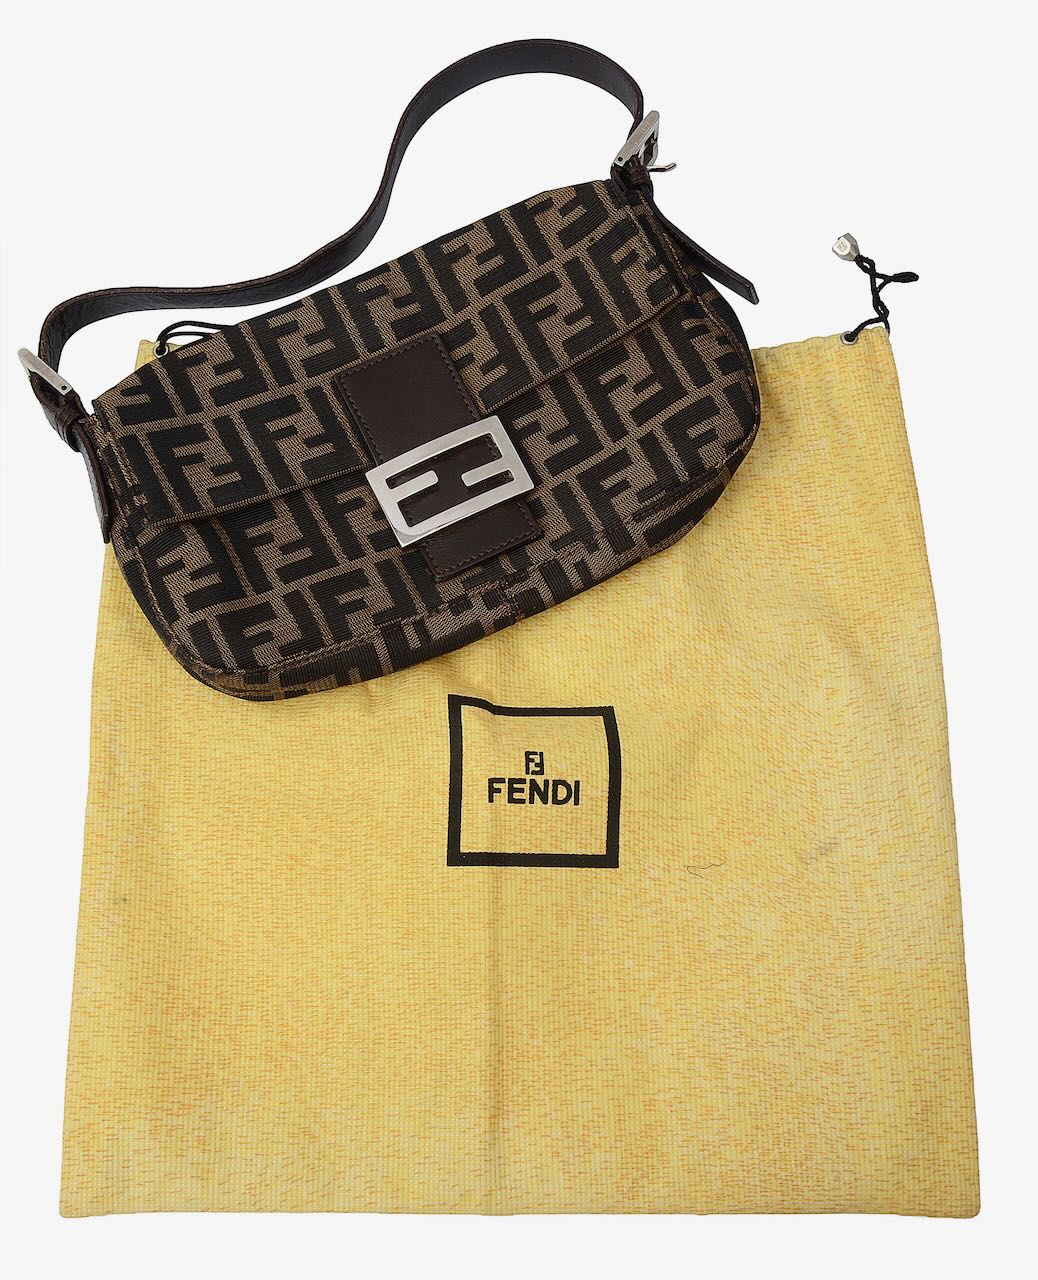 1990s baguette shoulder bag by Fendi - Image 2 of 2